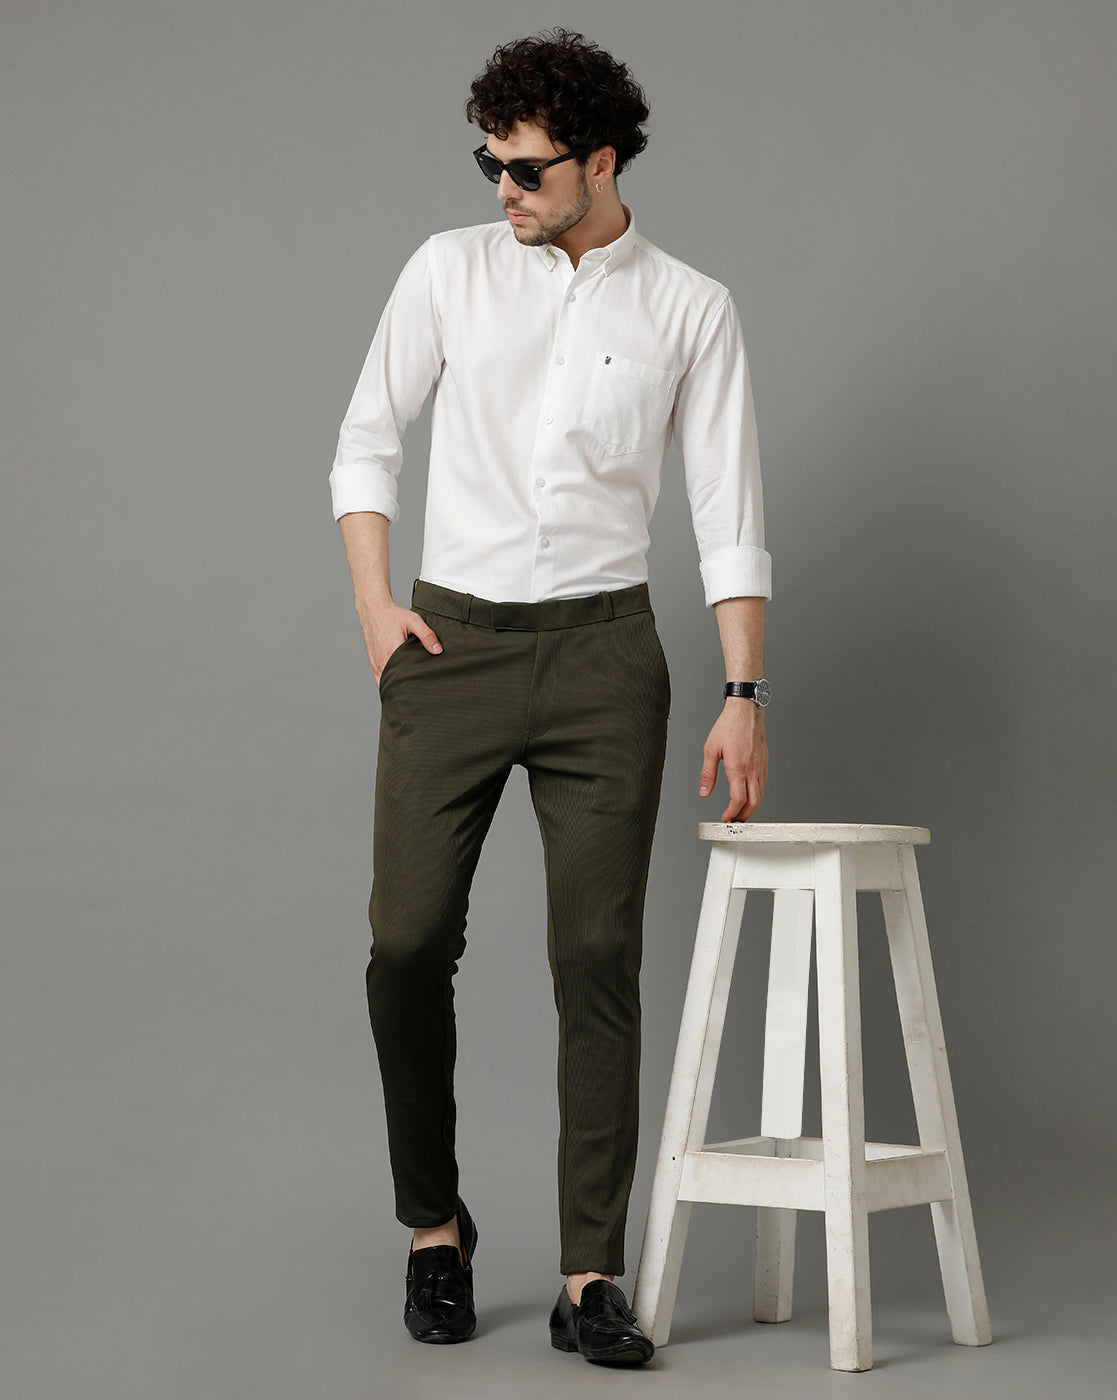 Premium White Cotton Slim Fit Shirt